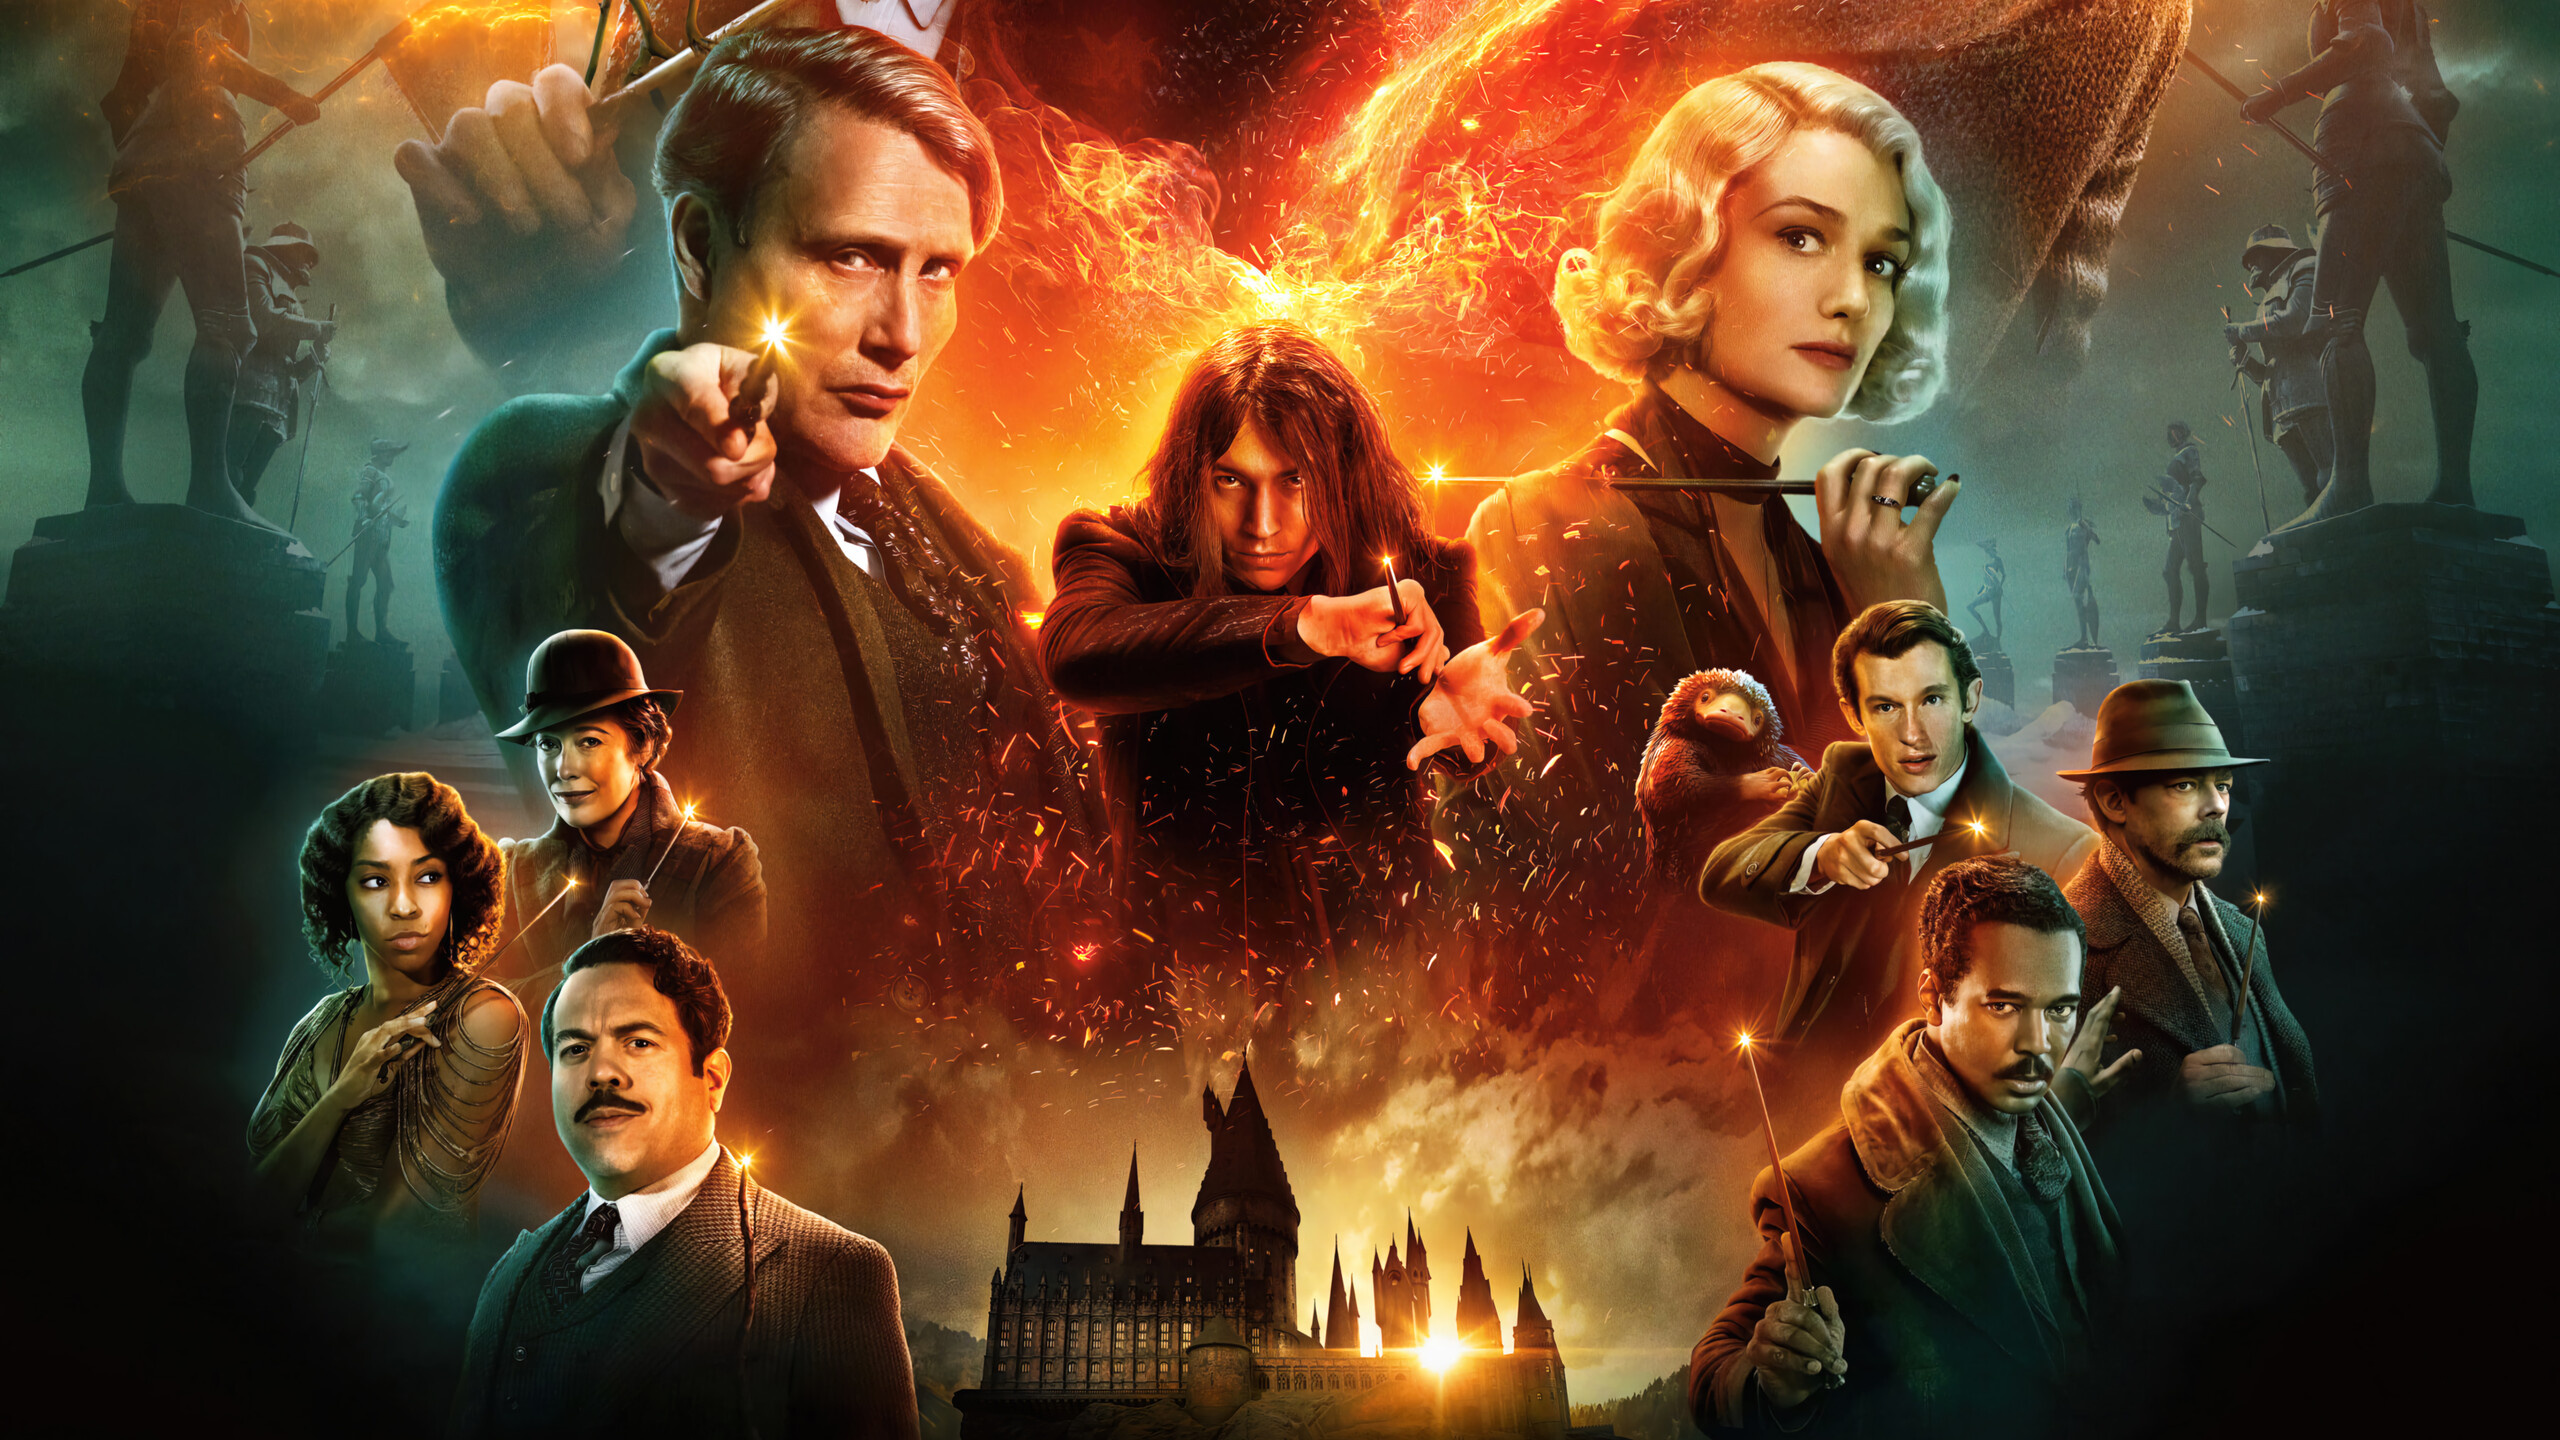 Fantastic Beasts 3 cast, Captivating poster, Desktop 4K wallpaper, Movie magic, 2560x1440 HD Desktop